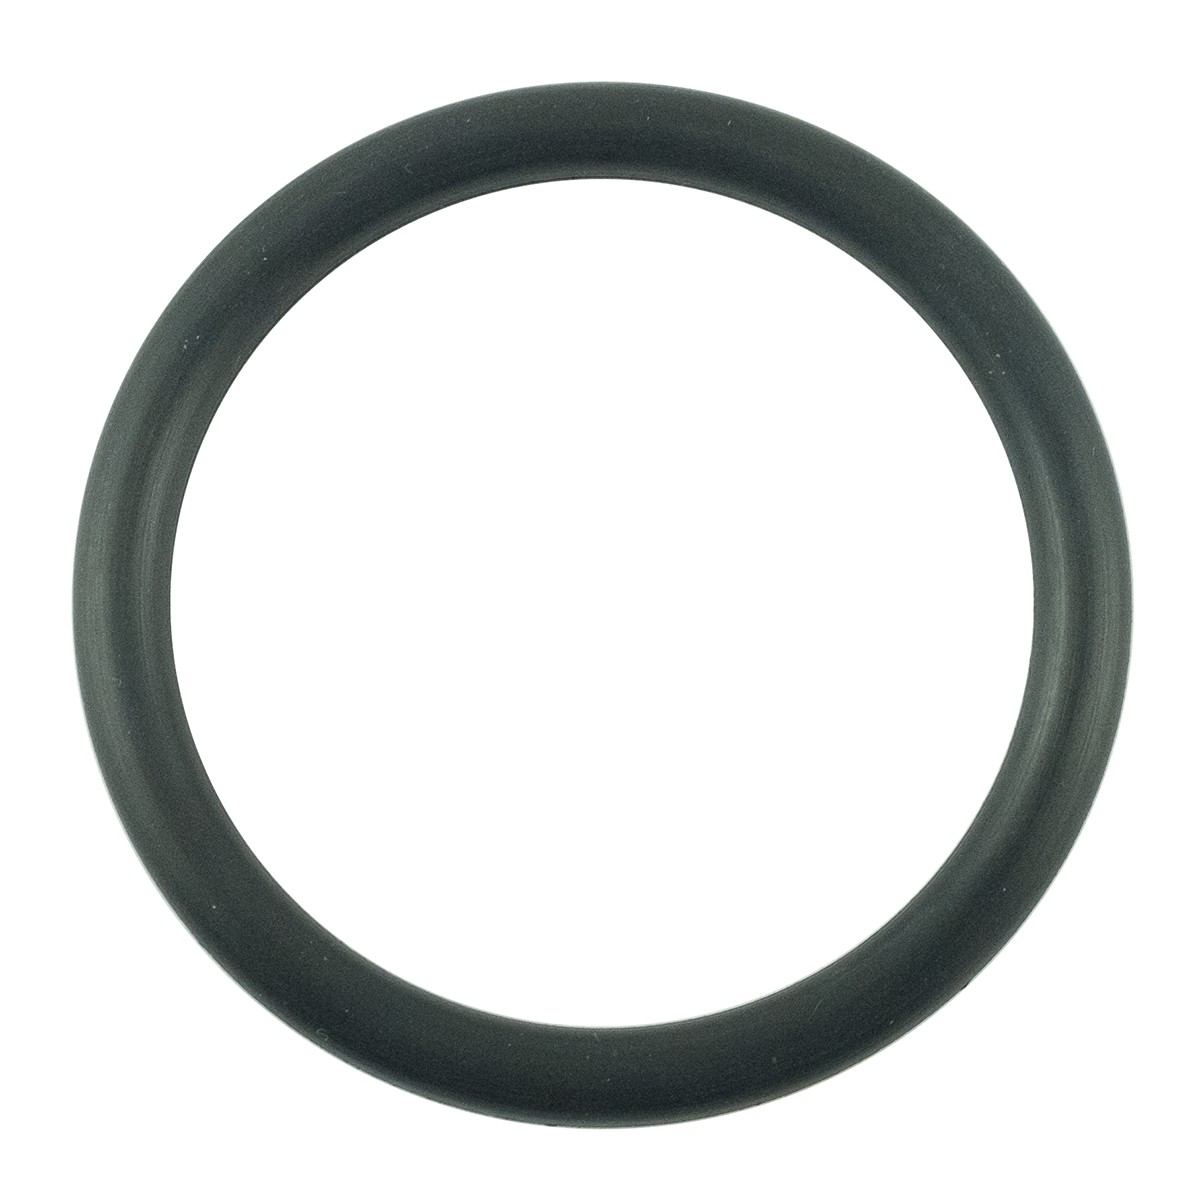 O-ring 51.60 x 5.70 mm / LS MT3.35 / LS MT3.40 / LS MT3.50 / LS MT3.60 / S801052010 / 40029219